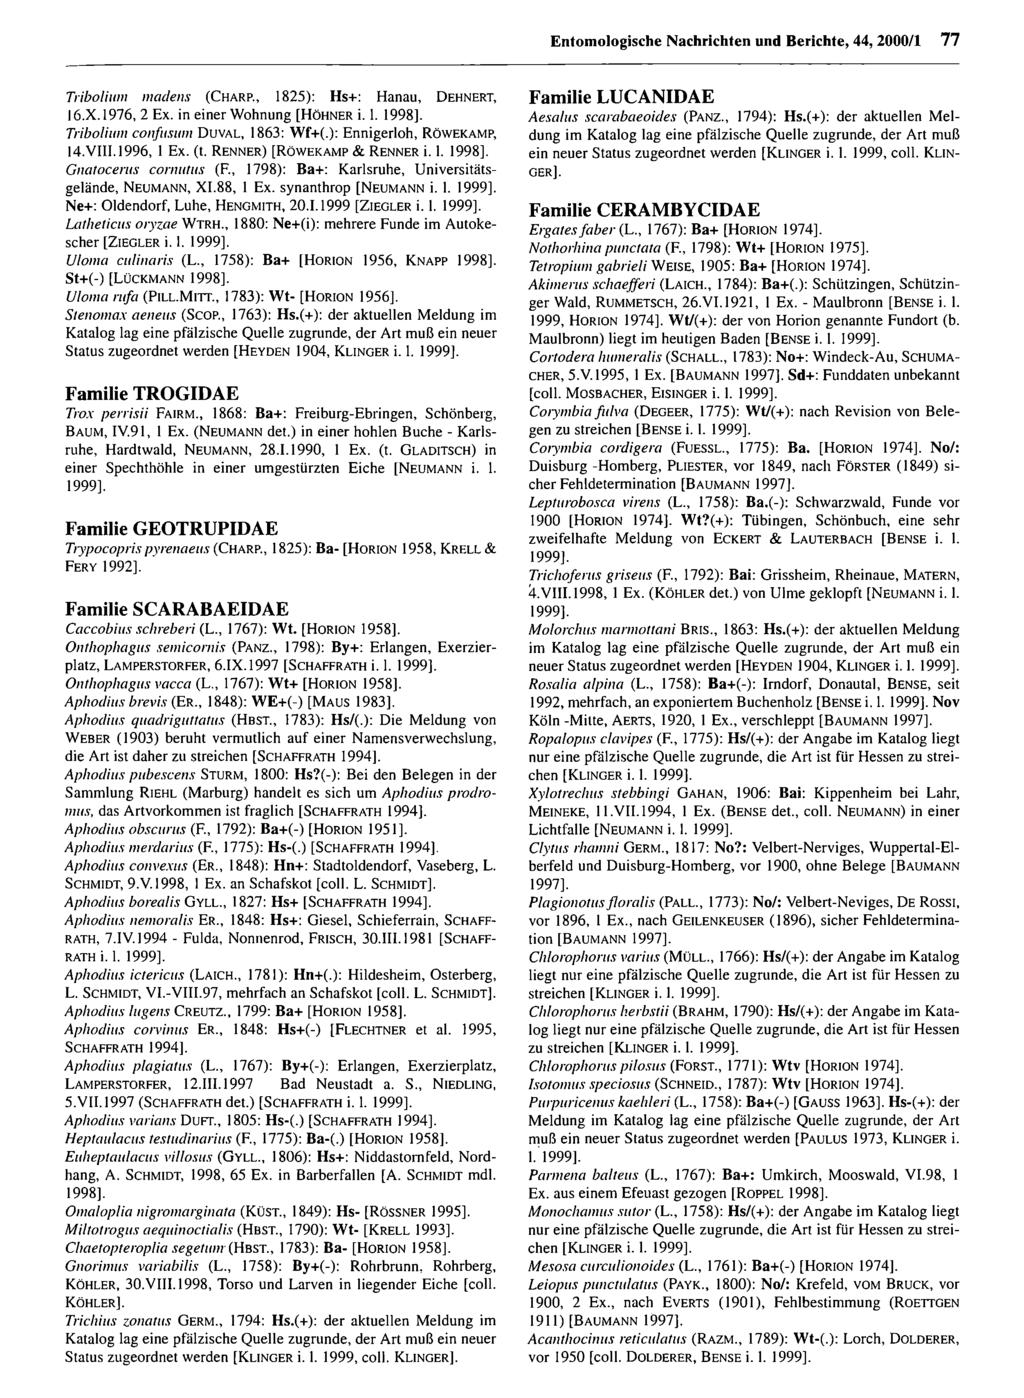 Entomologische Nachrichten und Berichte; download Entomologische unter www.biologiezentrum.at Nachrichten und Berichte, 44, 2000/1 77 Tribolimi! madens (C h a rp.